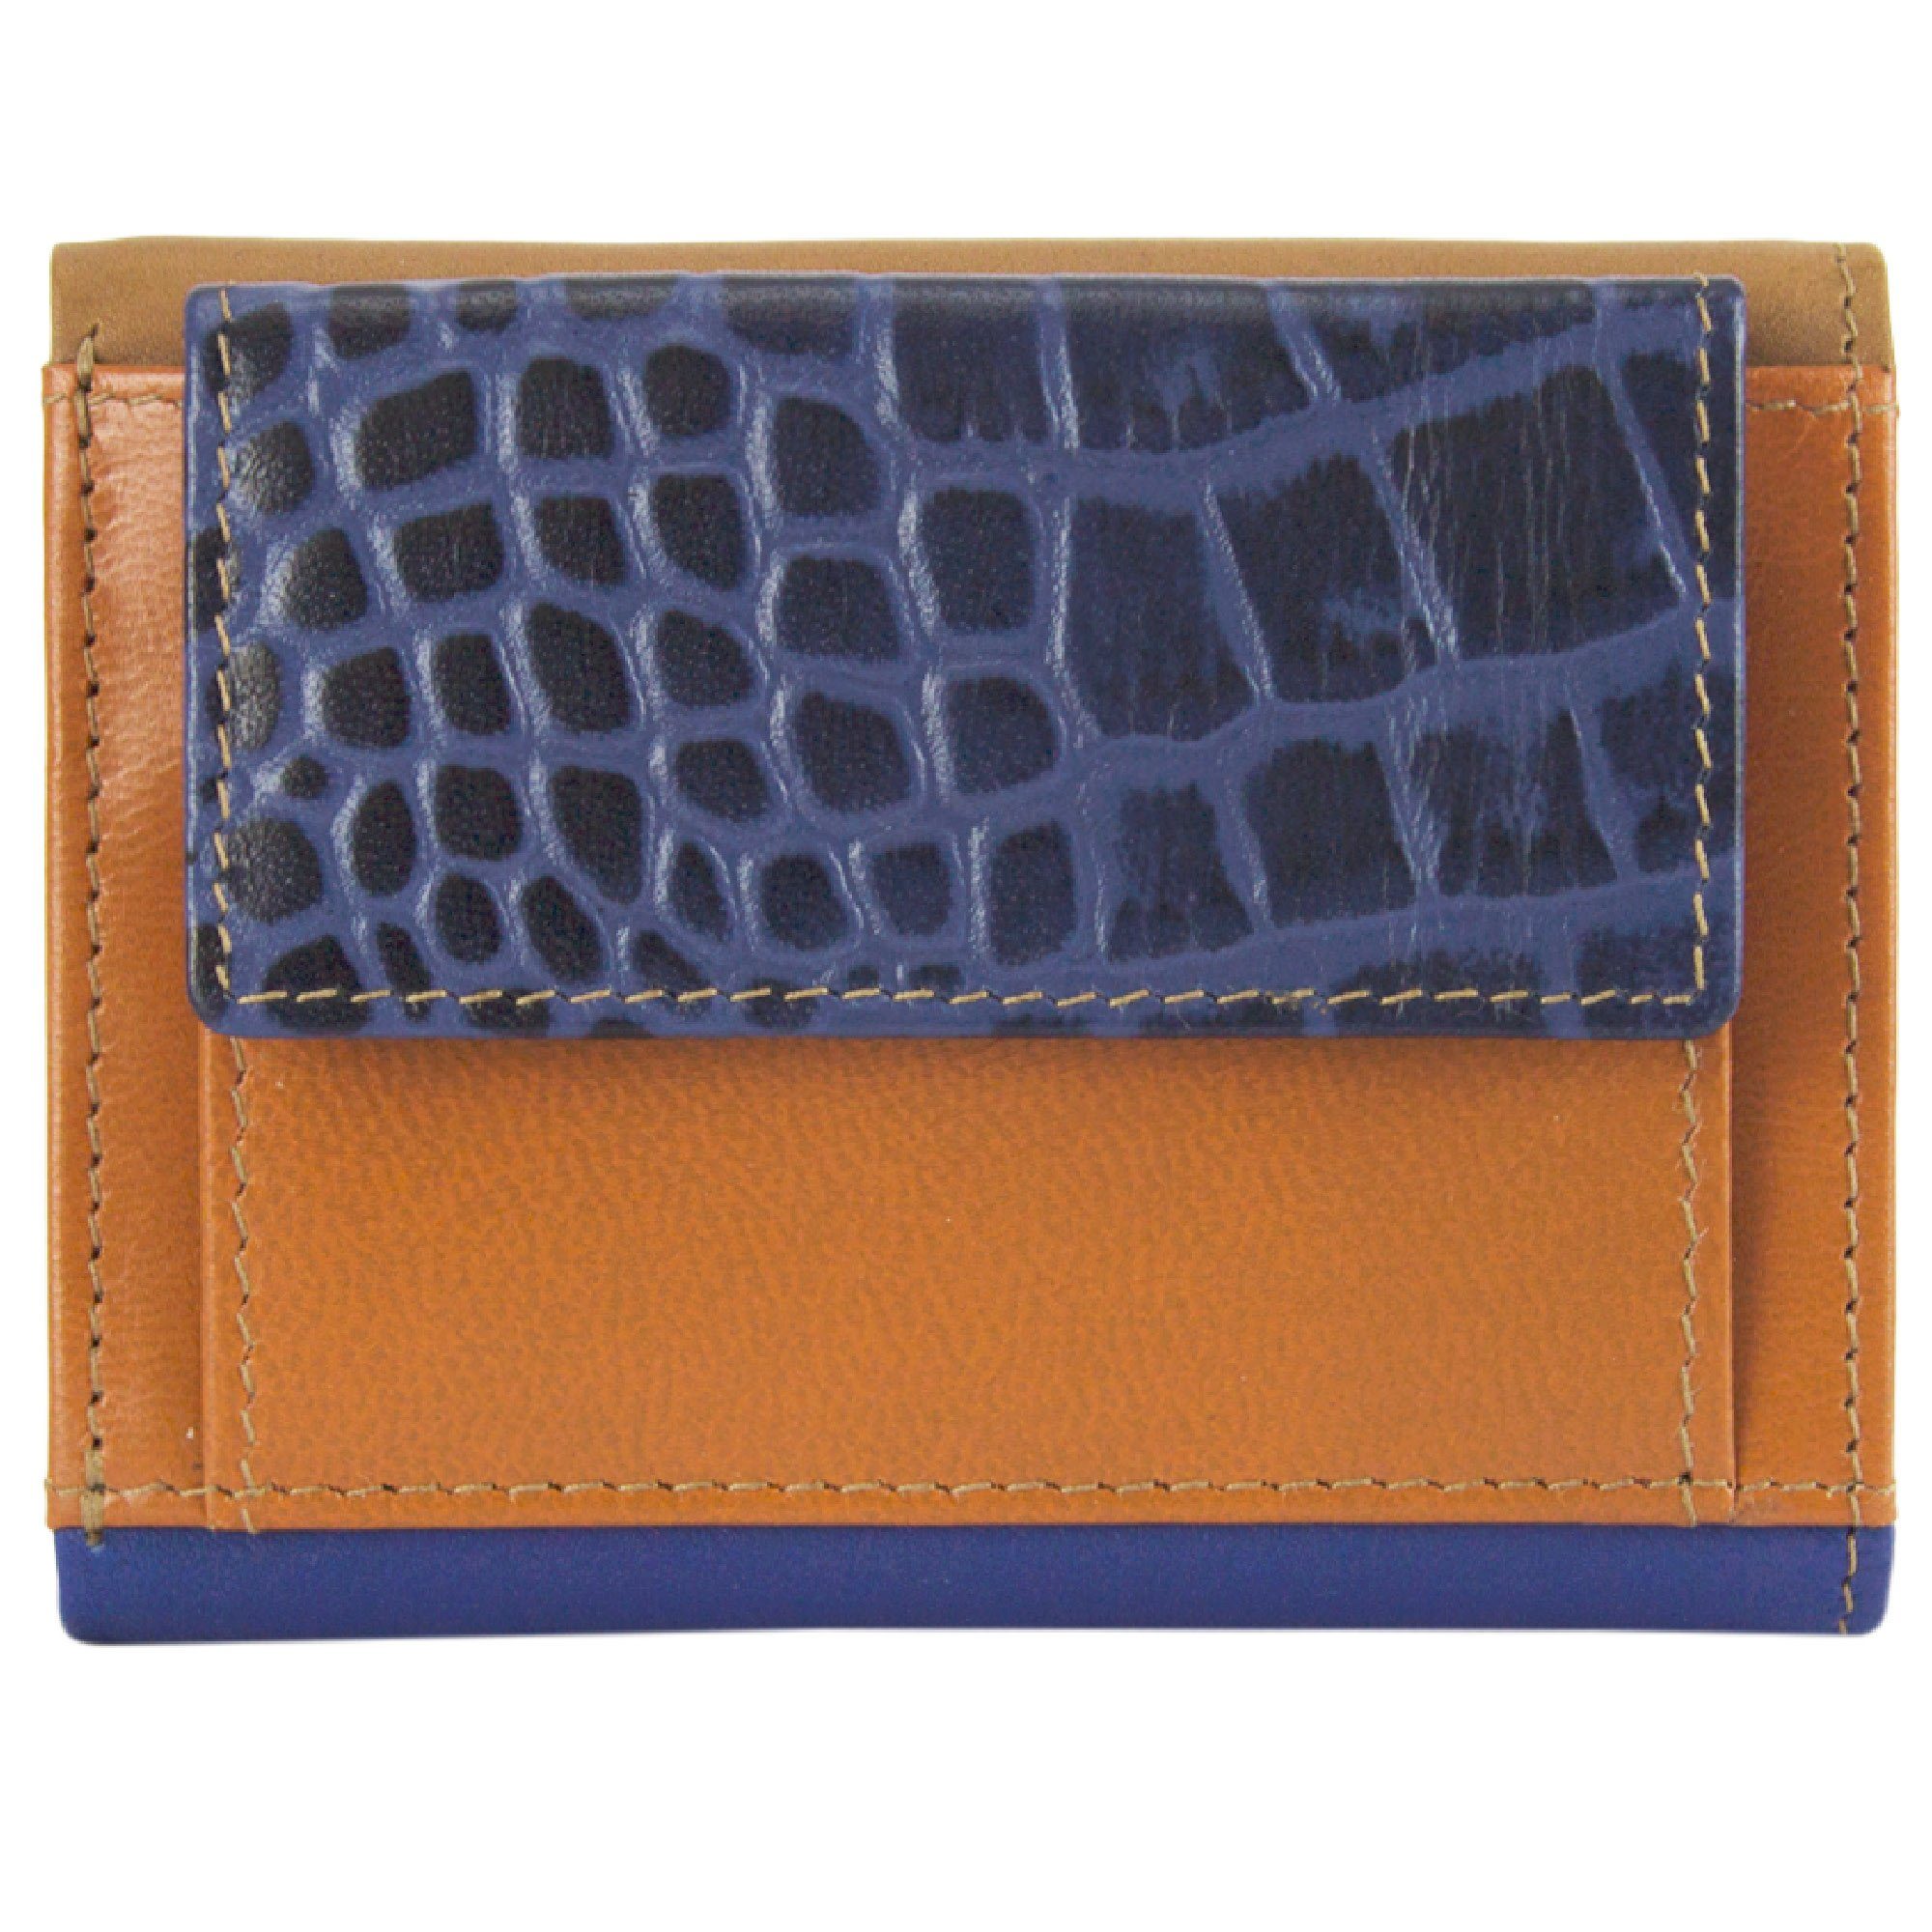 Sunsa Mini Geldbörse blau/braun RFID-Schutz, mit Unisex Portemonnaie Geldbeutel aus Leder echt Geldbörse recycelten Lederresten, klein Mini Leder, Brieftasche